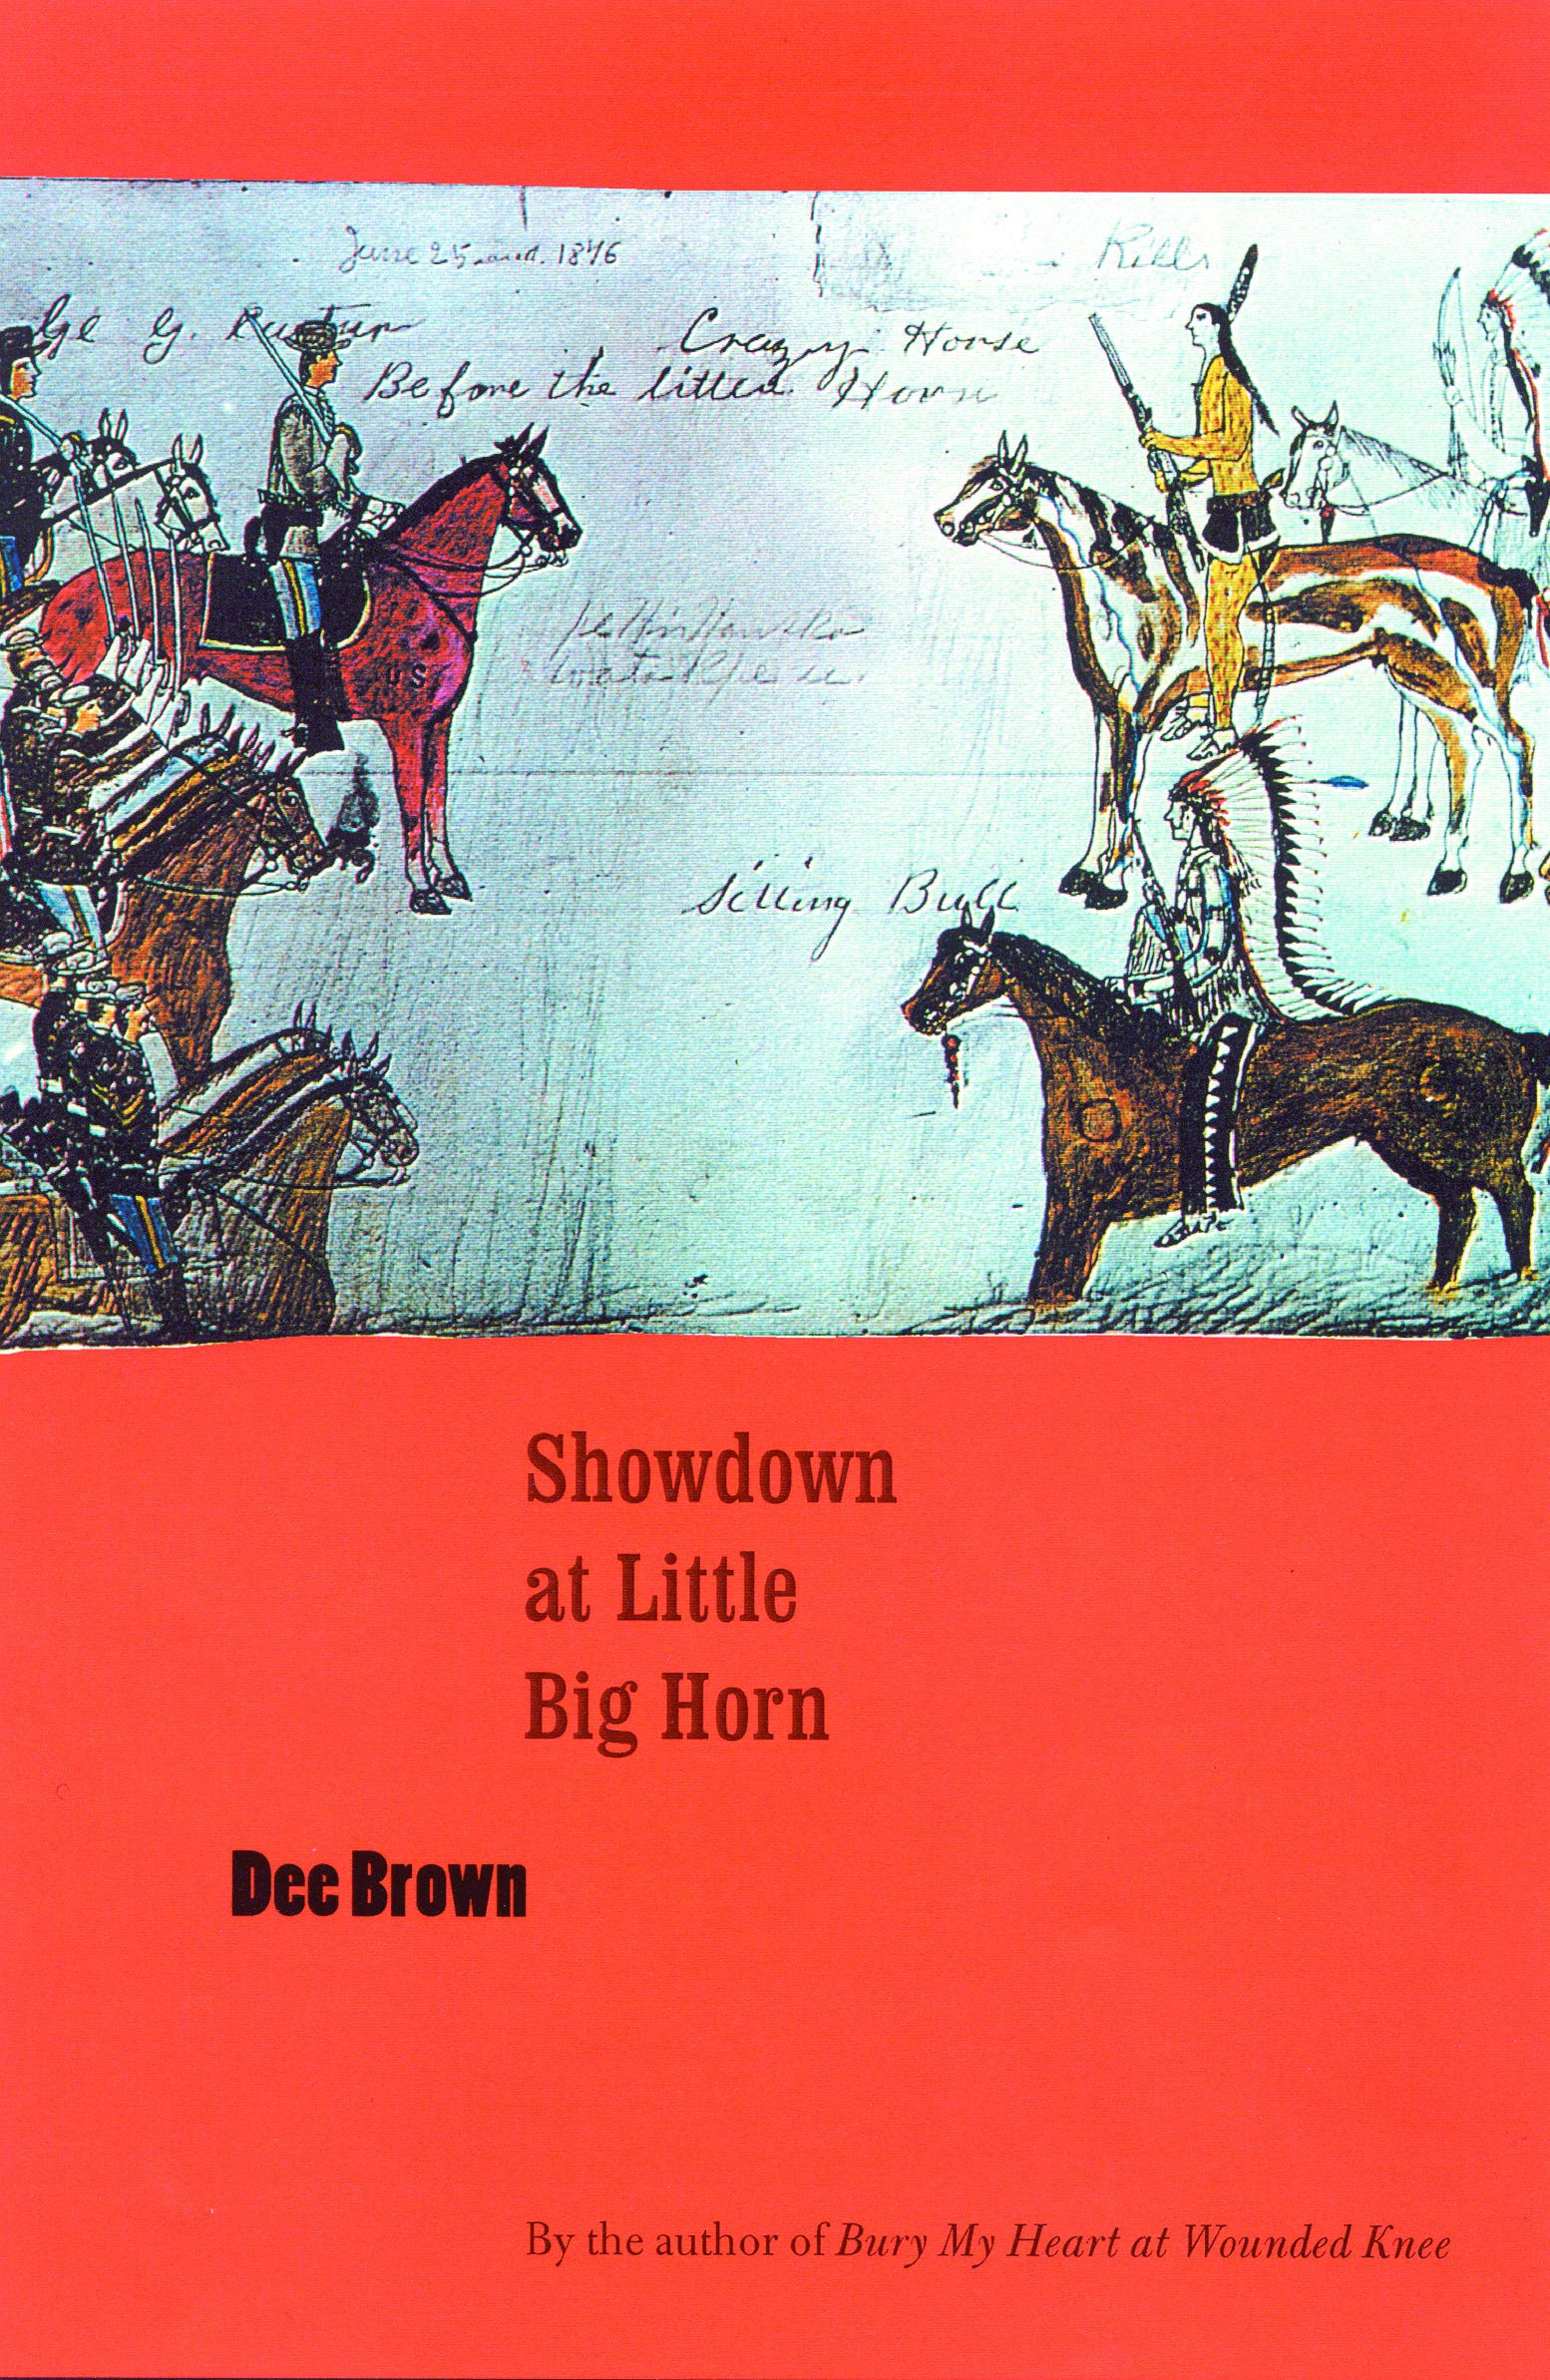 Showdown/ little/horn